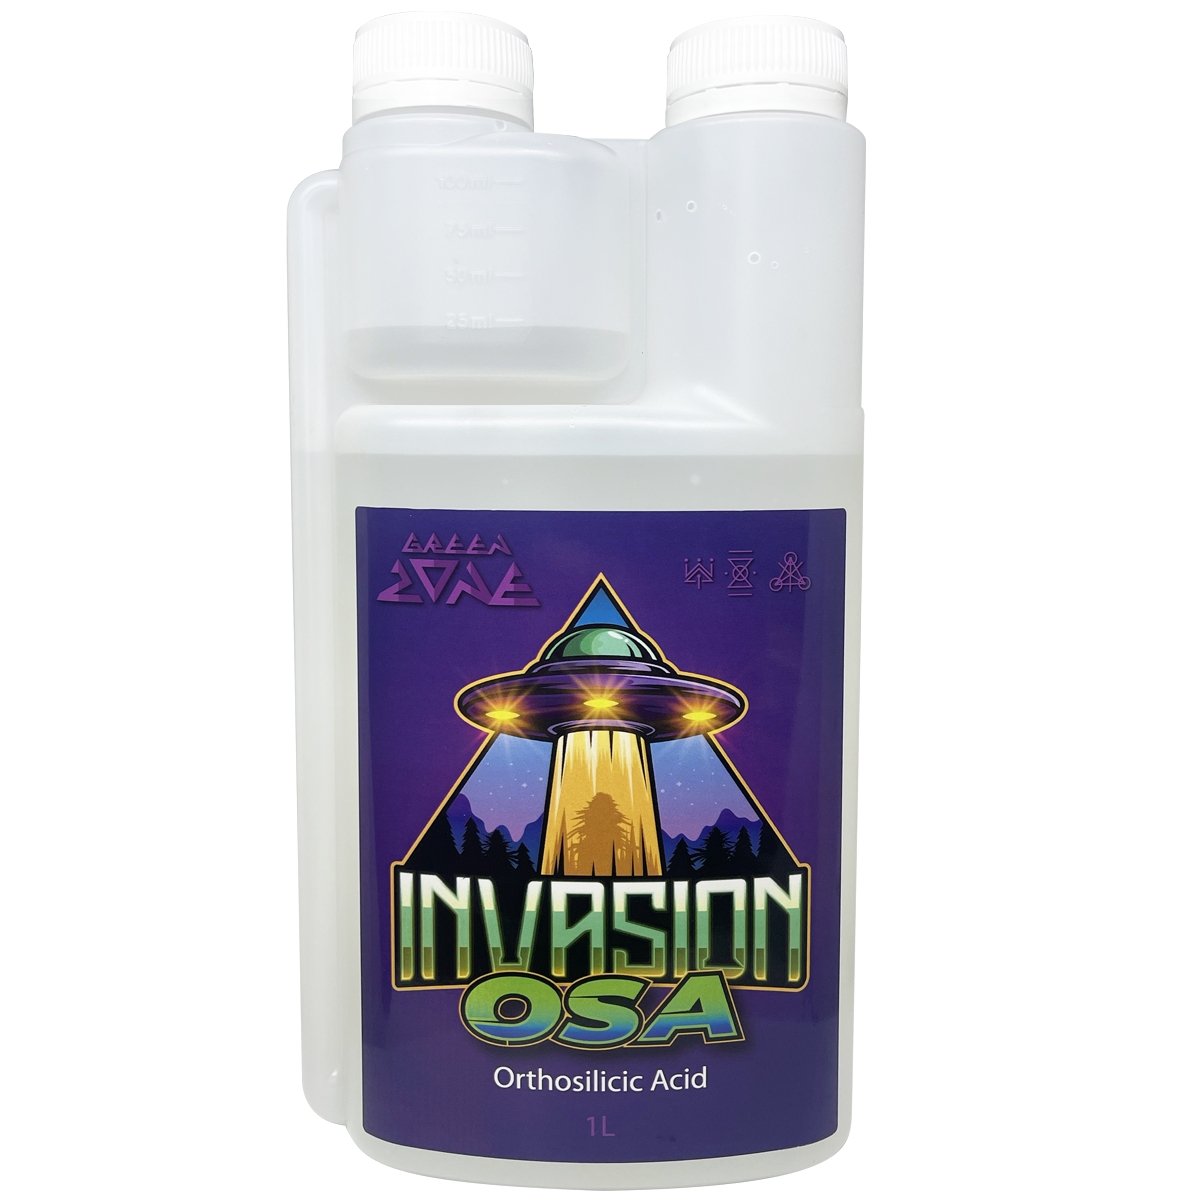 Invasion Osa - Monosilicic Acid / Silicon - 1L